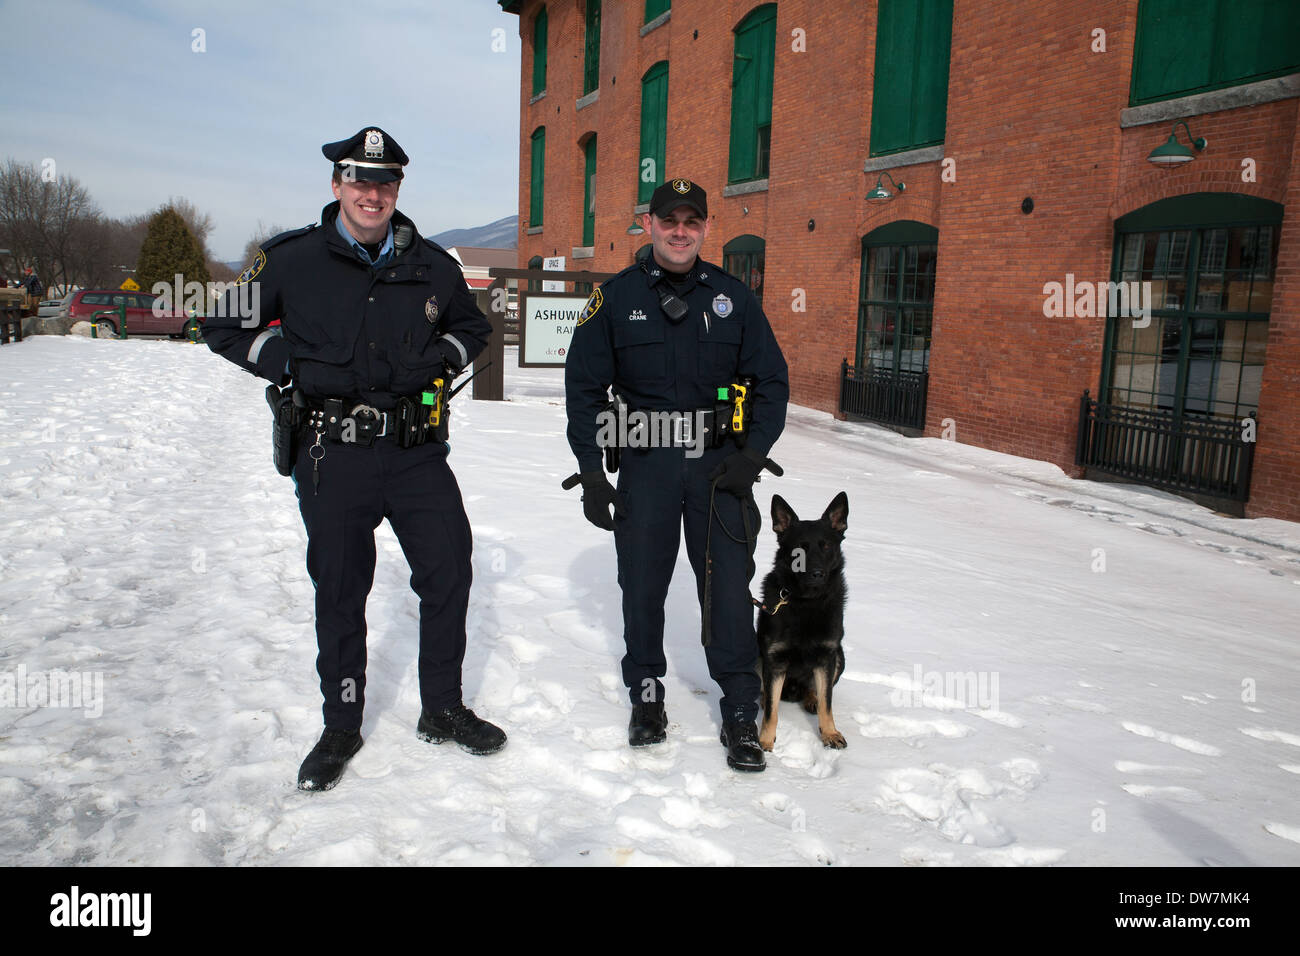 Les deux agents de police posent avec la ville de neuf chien policier. Banque D'Images